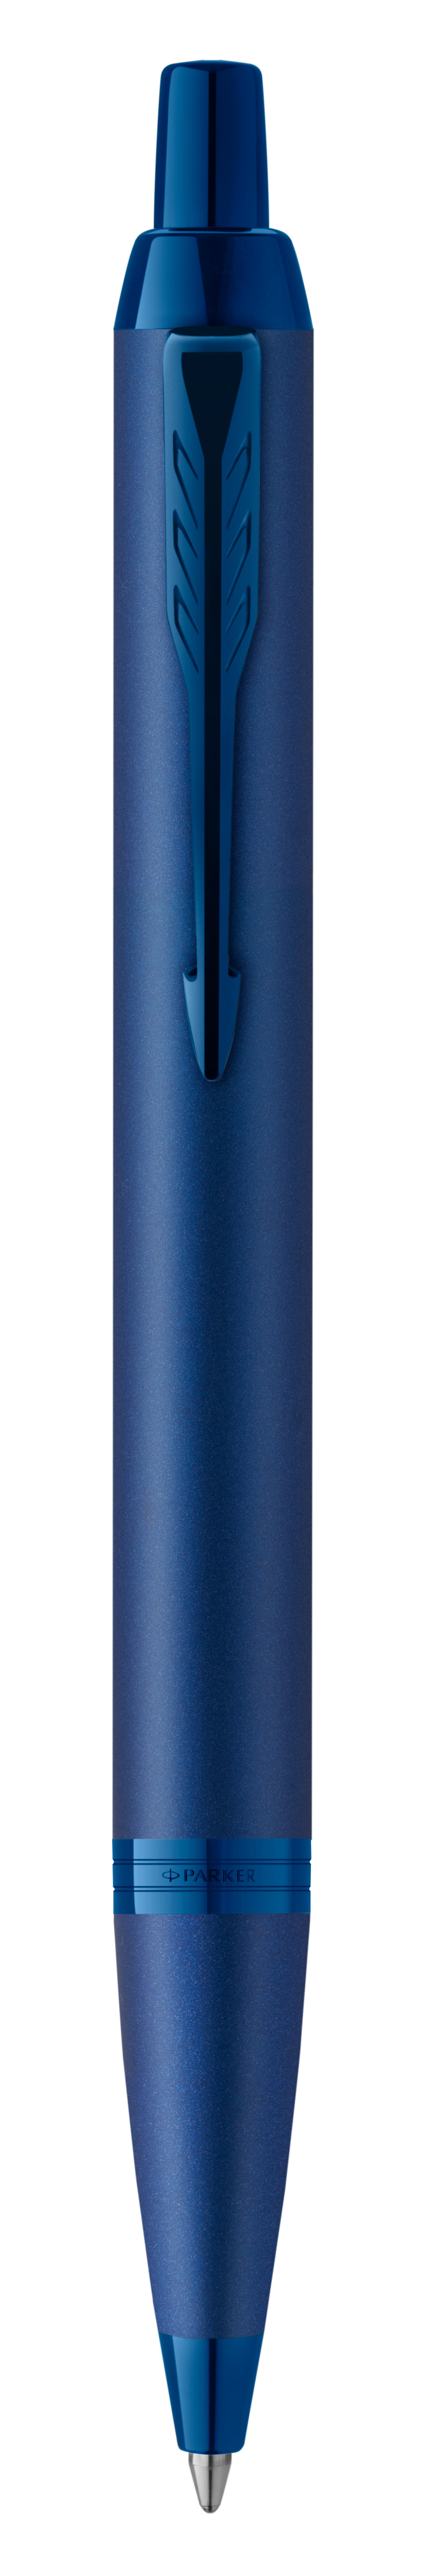 PARKER Stylo à bille Monochrome M 2172966 IM Professional, bleu